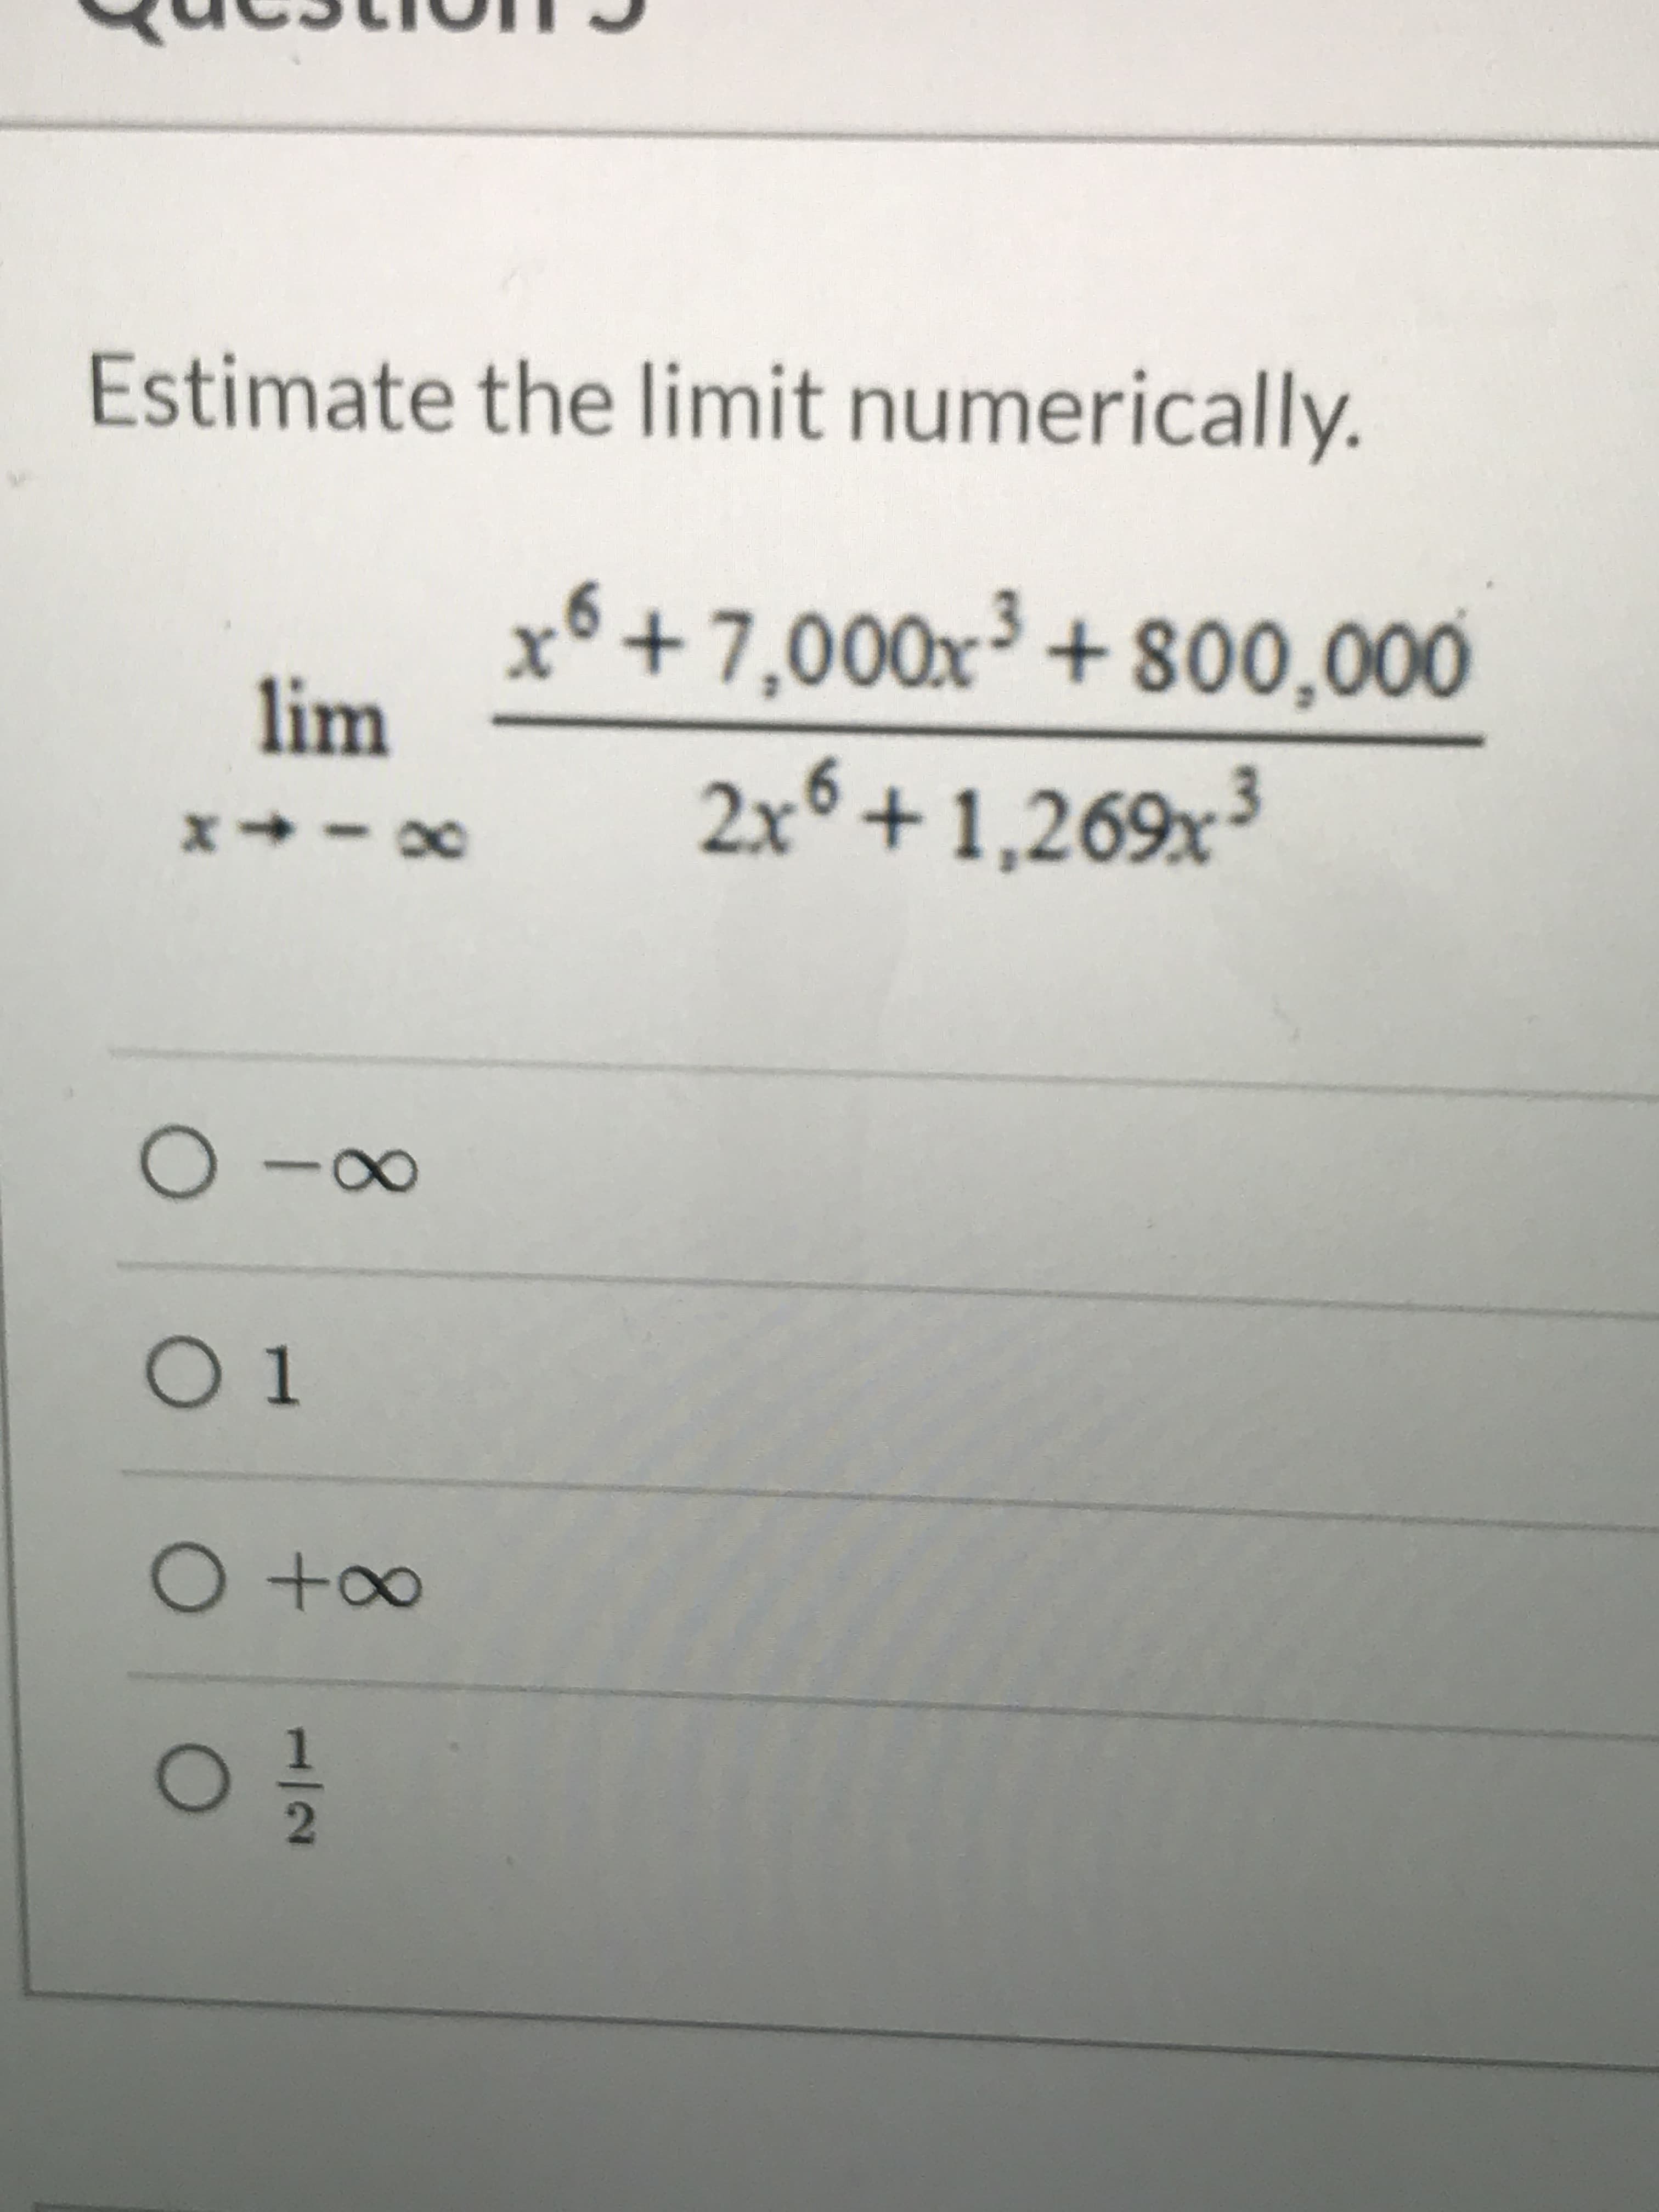 Estimate the limit numerically.
++7,000x³+ 800,000
lim
2x° + 1,269x³
8.
O to∞
2.
